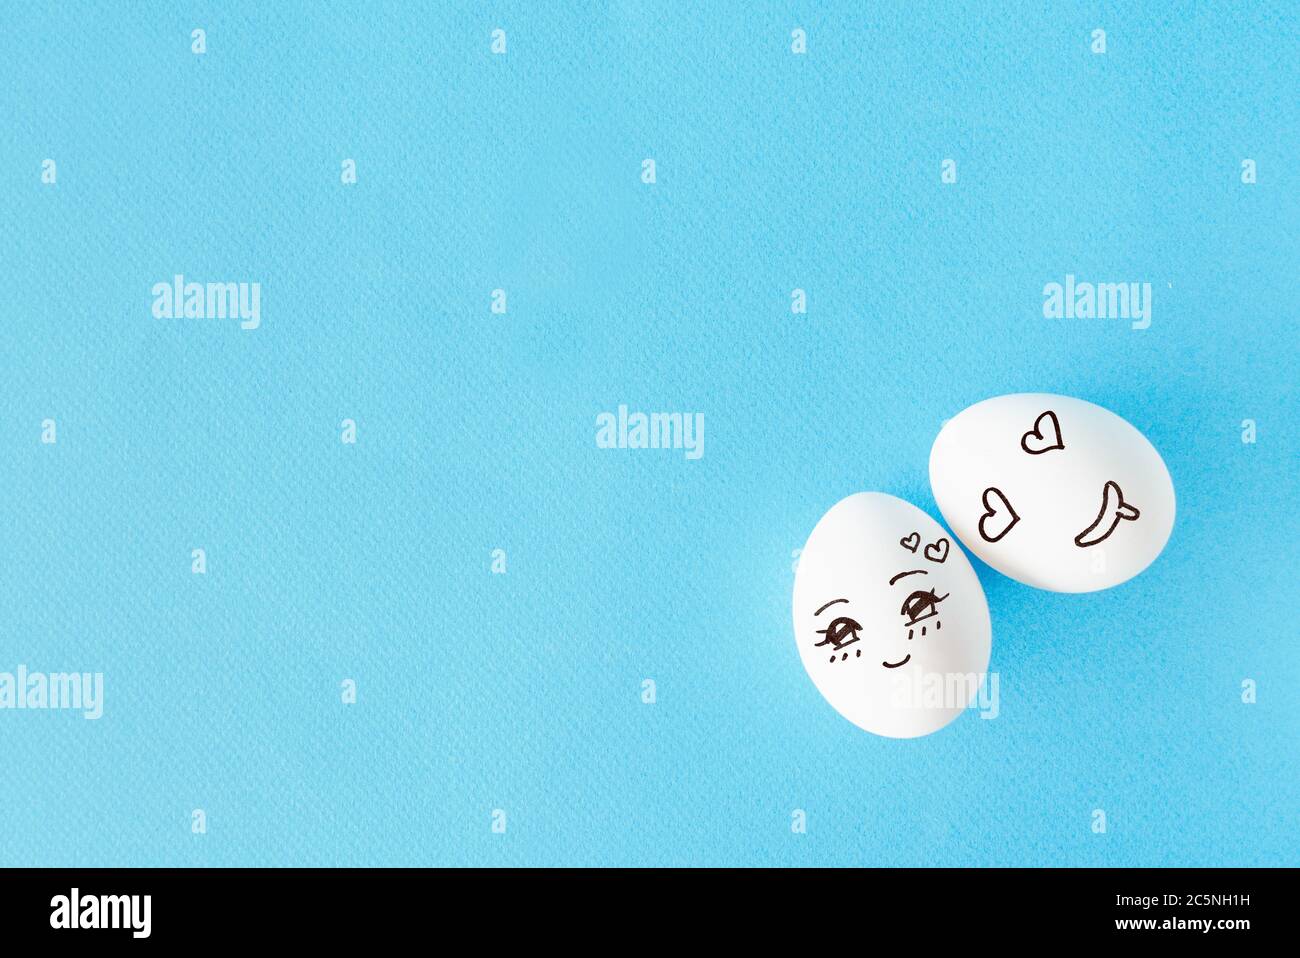 Pareja huevos con el concepto de cara feliz por amor, fondo azul con espacio vacío Foto de stock